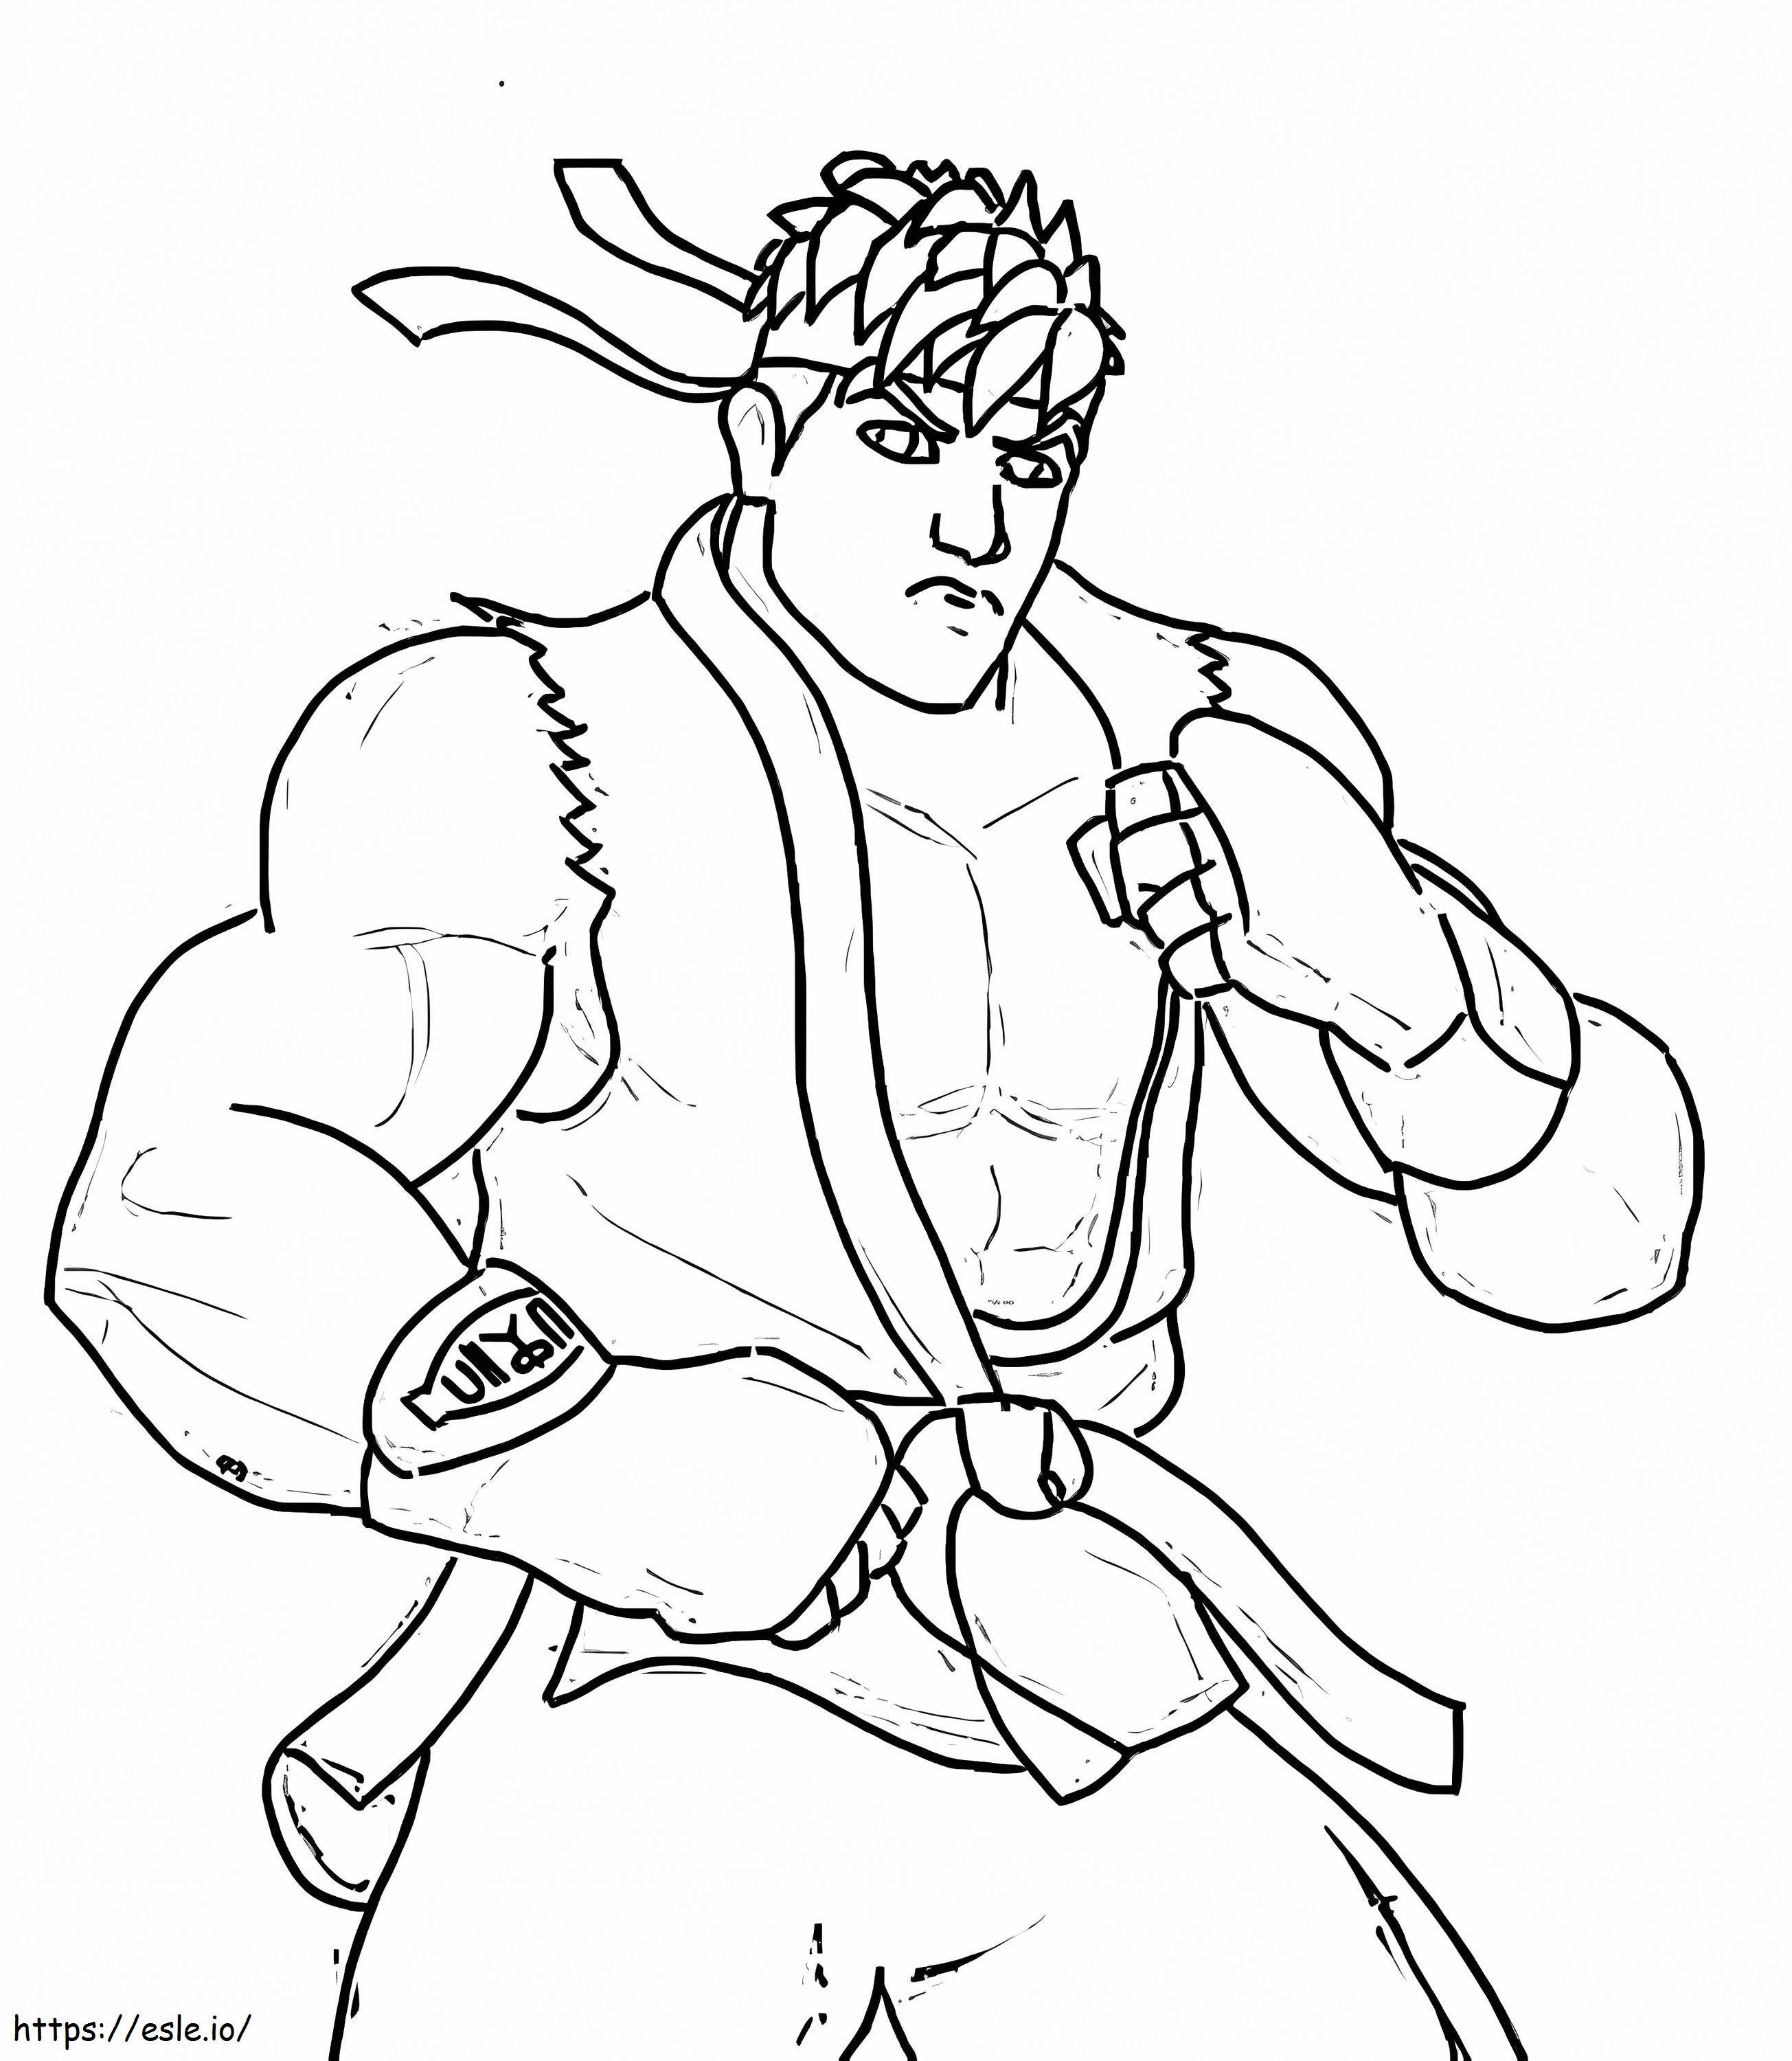 Ryu de bază de colorat